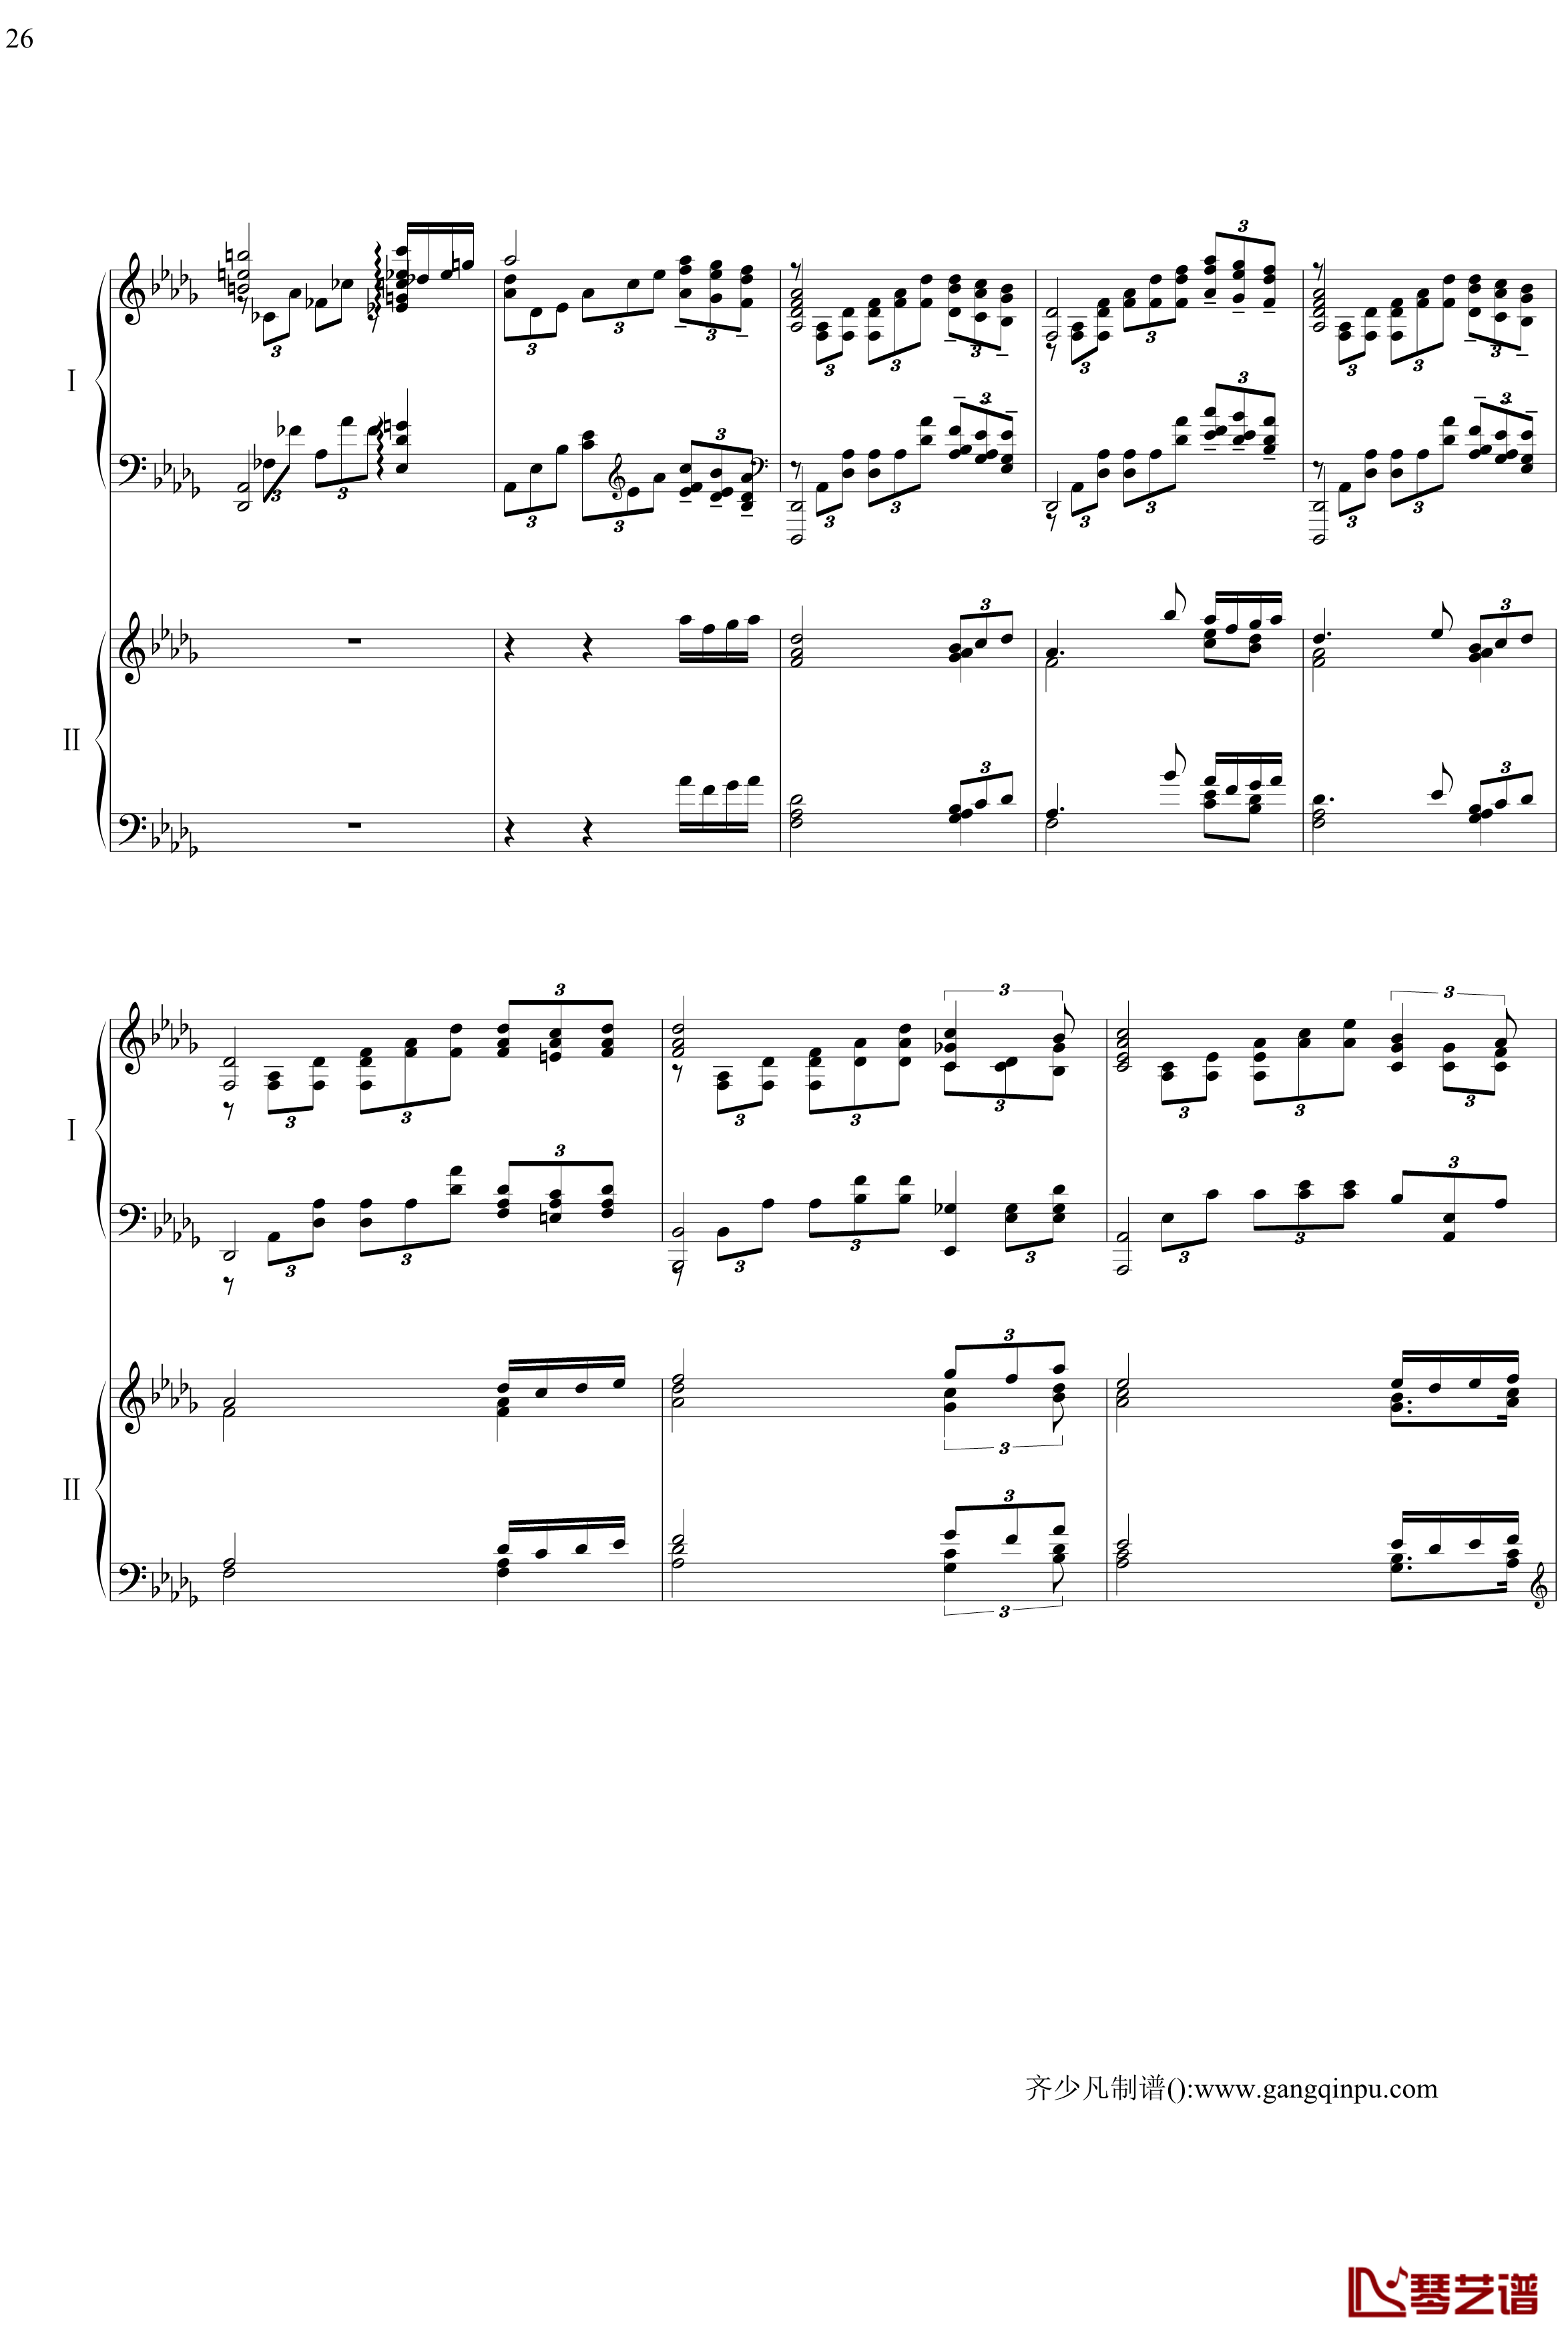 帕格尼尼主题狂想曲钢琴谱-11~18变奏-拉赫马尼若夫26